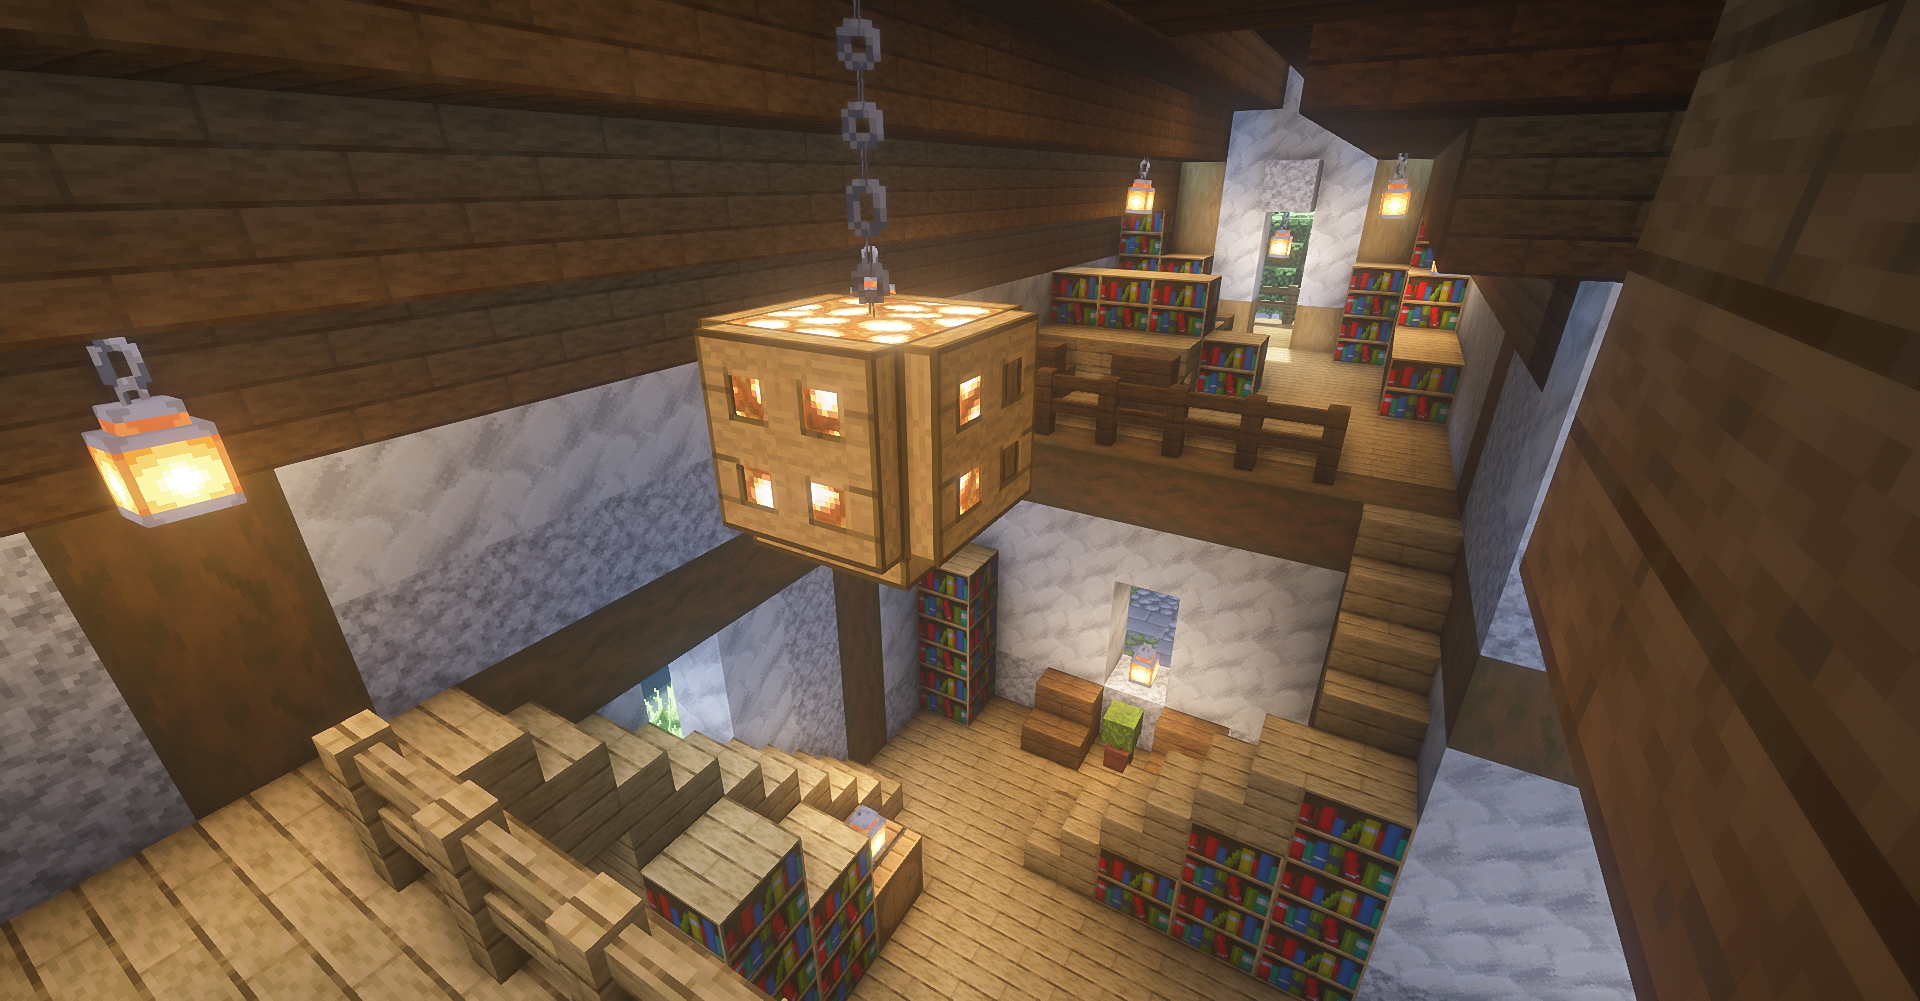 Horohoro ホロホロ 木材と石の家の内装完成しました 湖のほとりにある図書館です 勉強もできますよ マイクラ建築 マイクラ マインクラフト Minecraft Minecraftbuilds サバイバル建築 T Co 0mwxgvu4iy Twitter